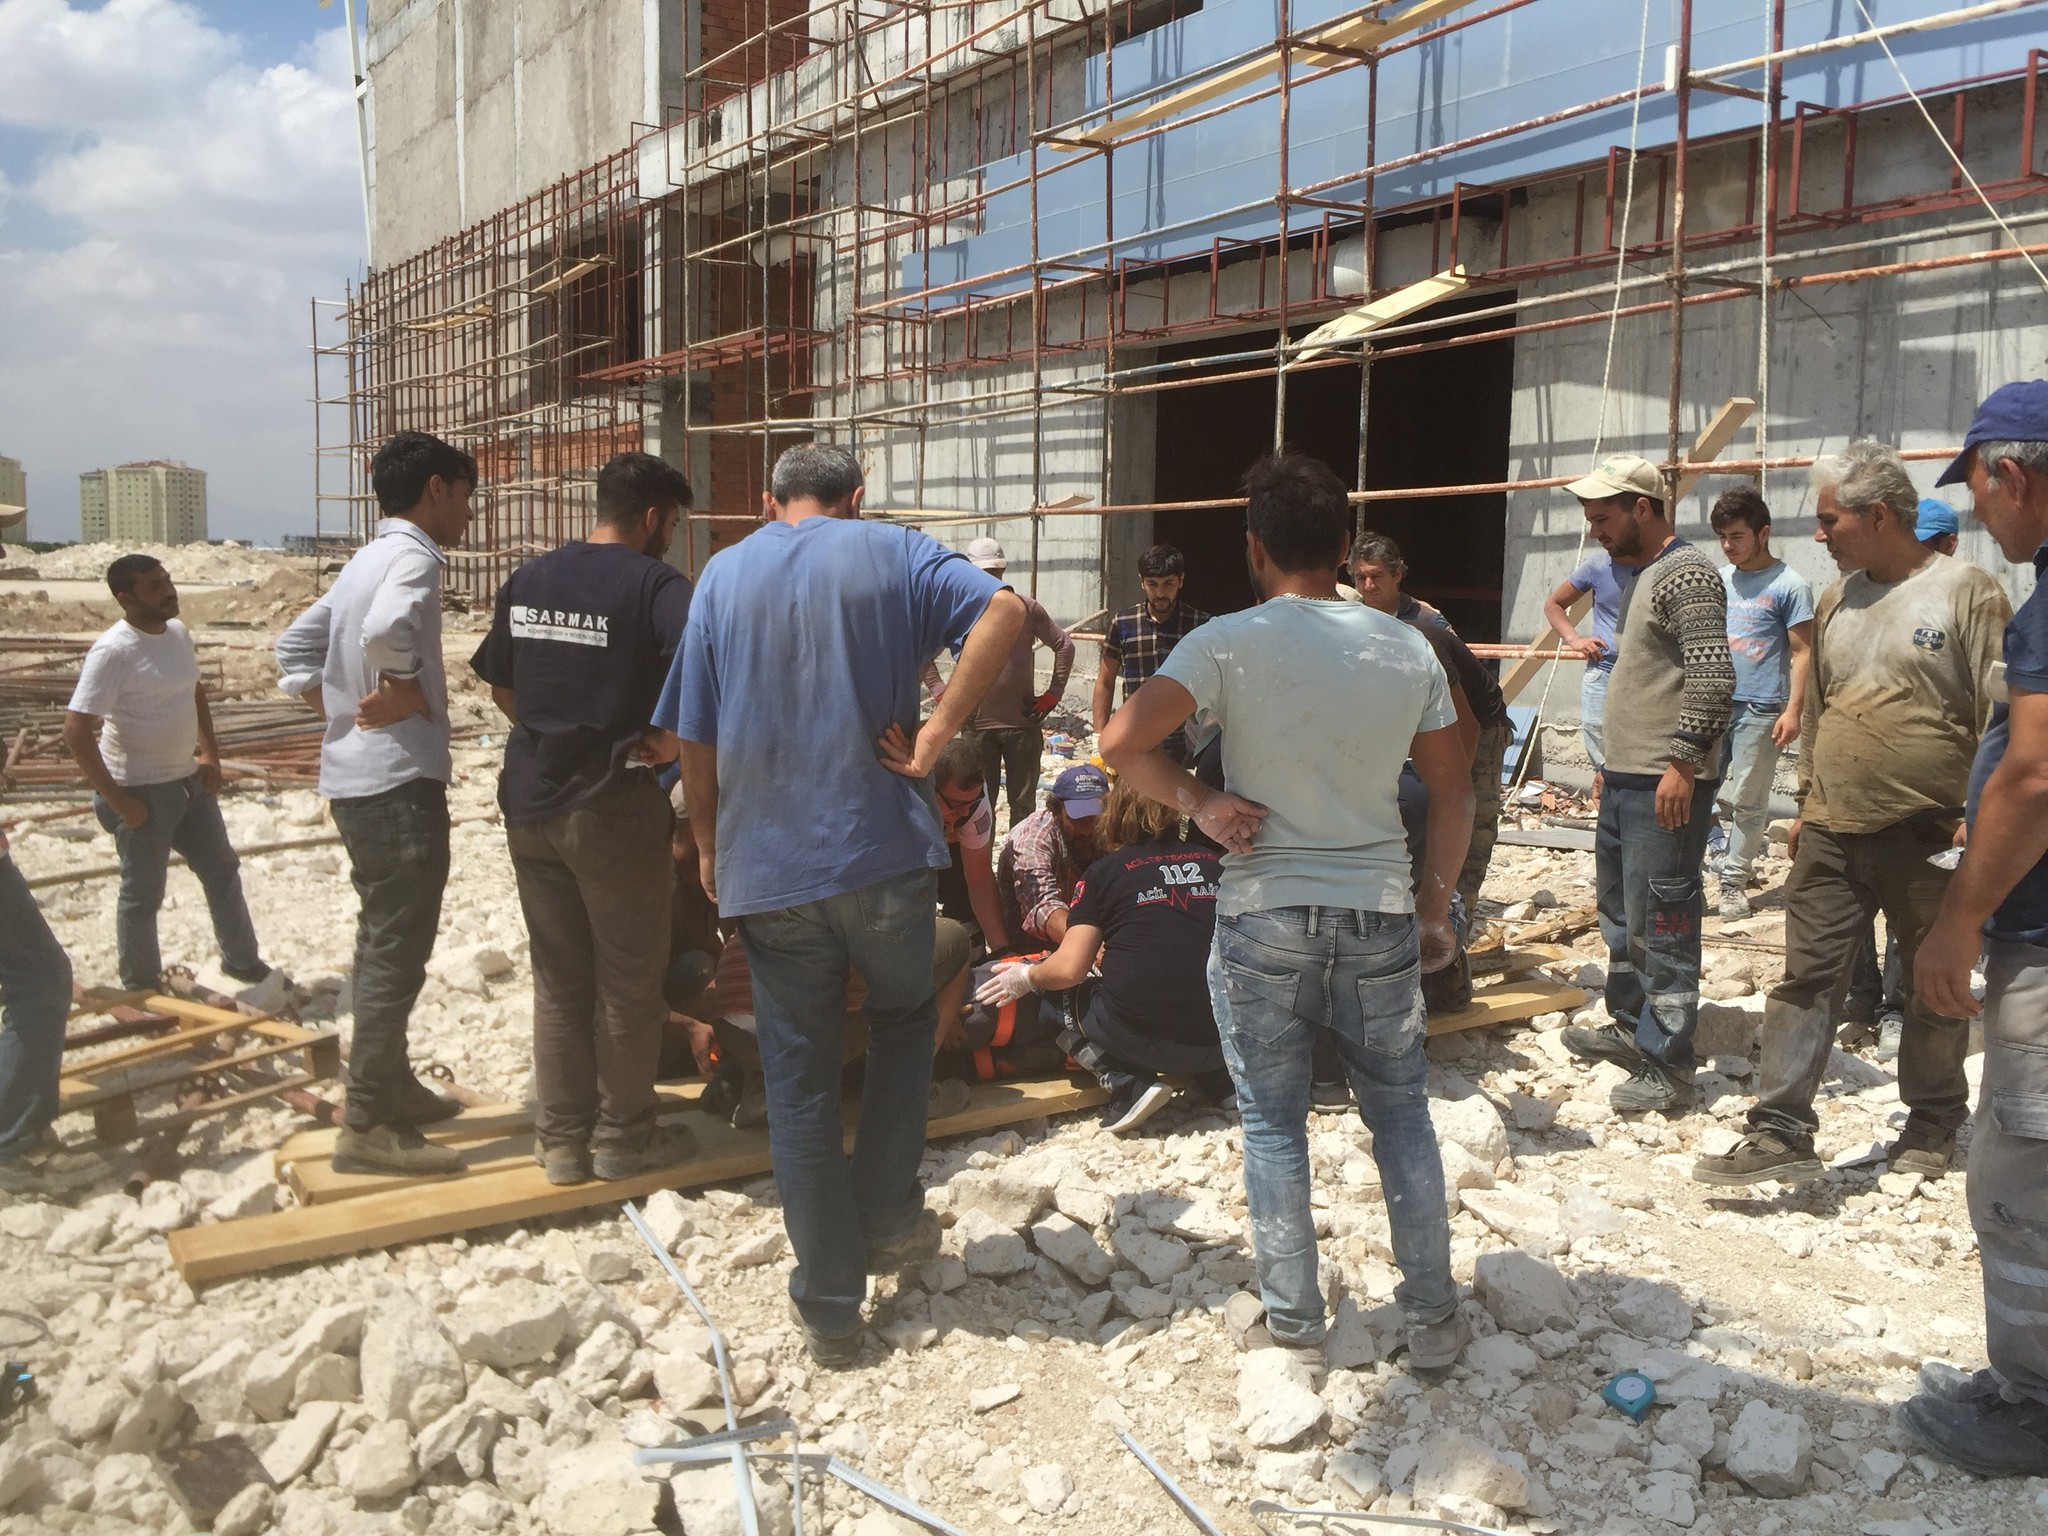 Karaman'da spor salonu inşaatından düşen işçi yaralandı